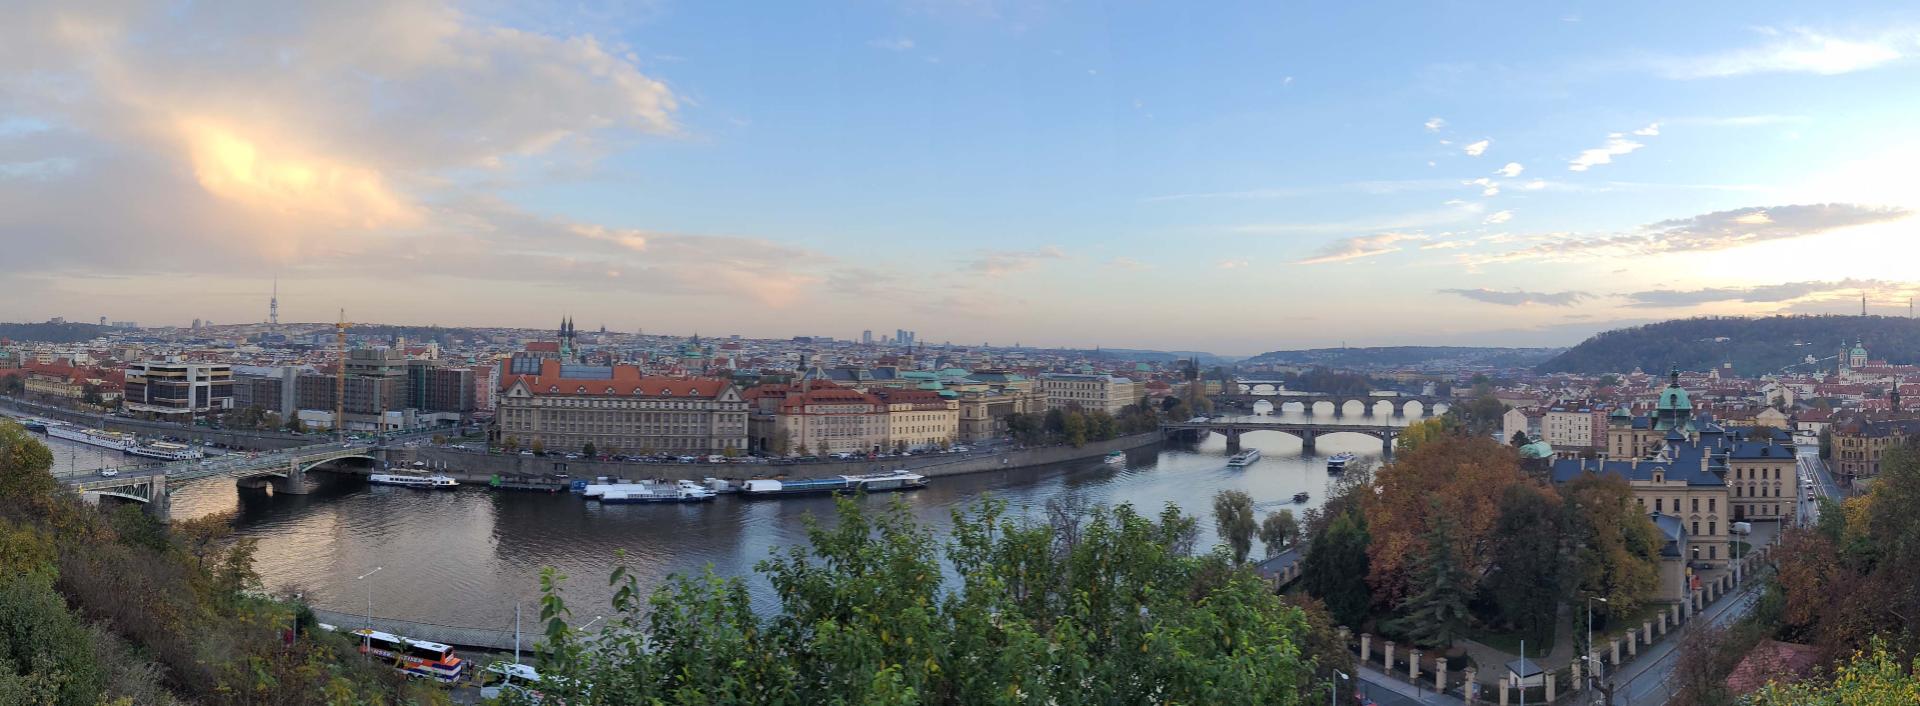 Что посмотреть в Праге за 2-3 дня?